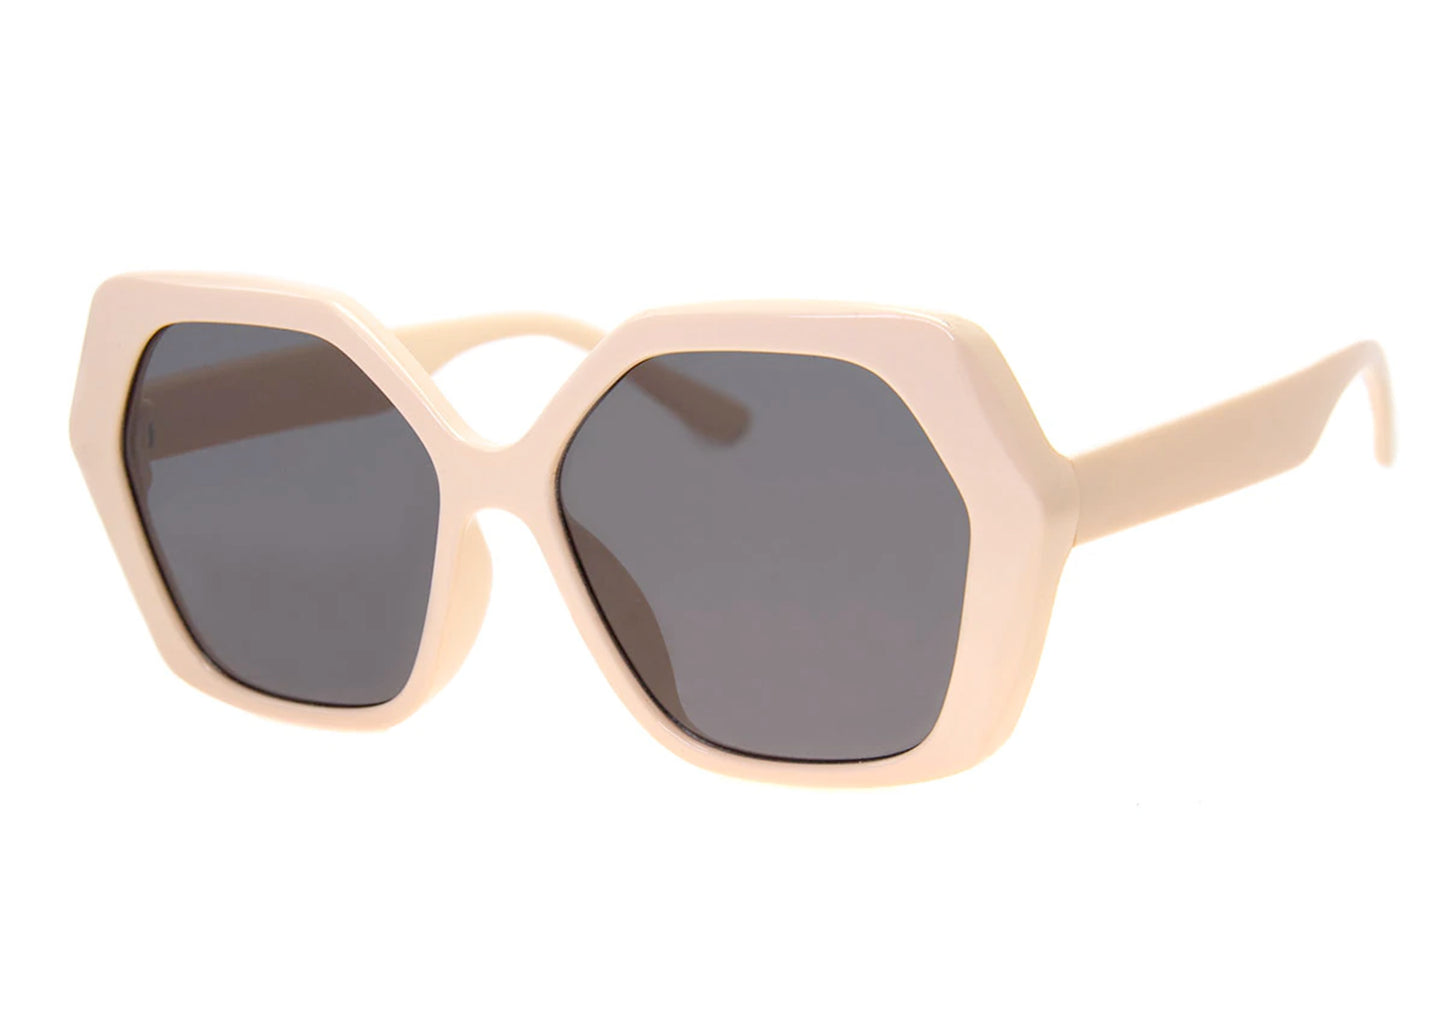 Lorna Sunglasses in Cream